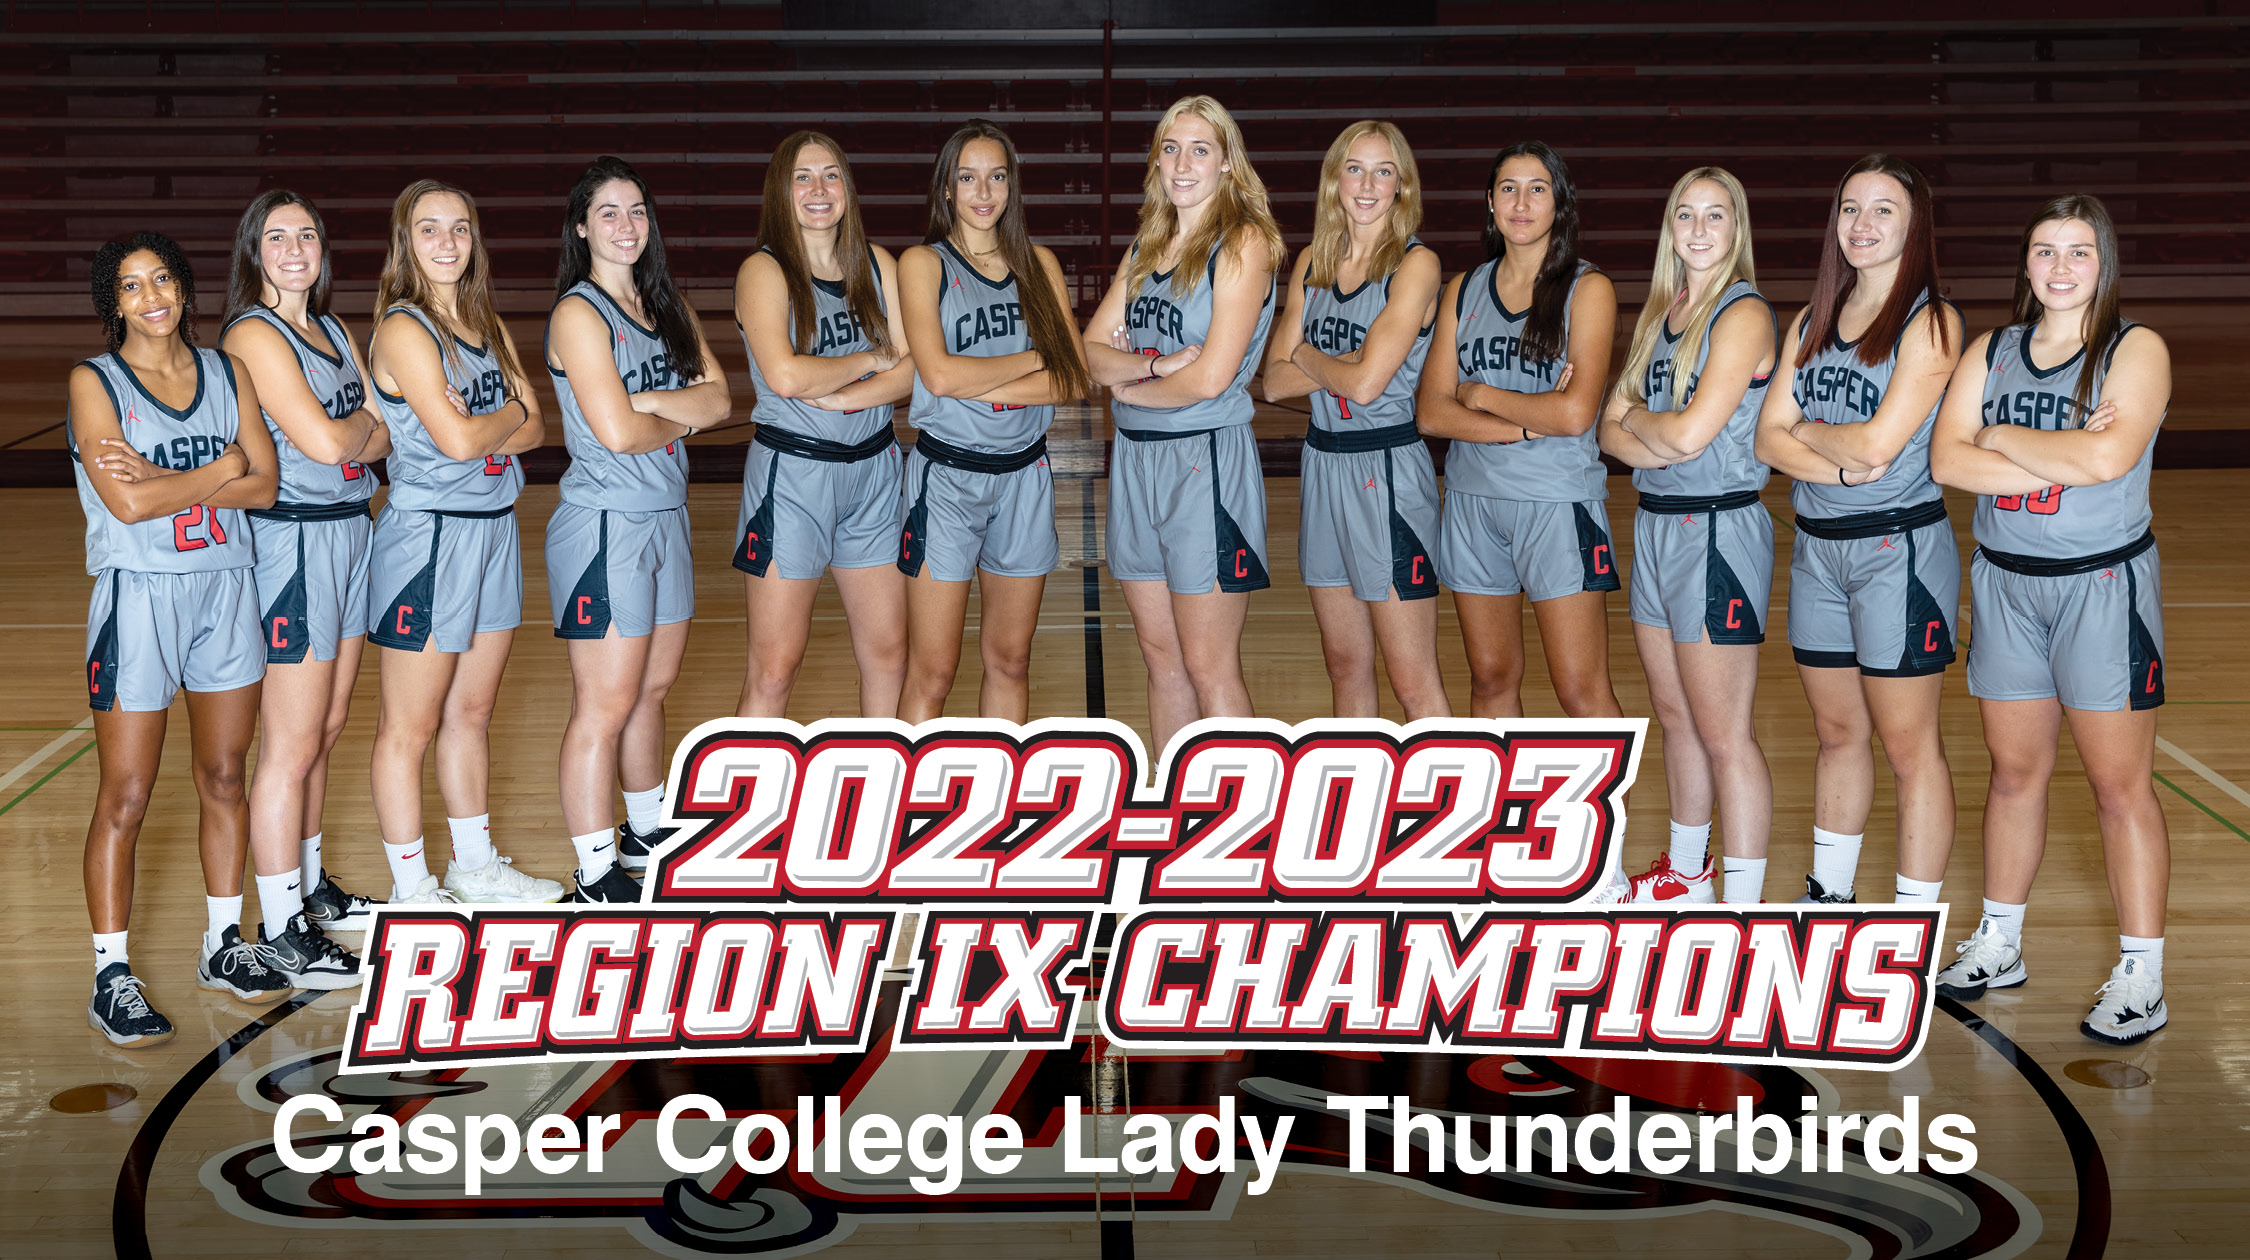 Lady Thunderbirds are the 2022-23 Region IX Champions!